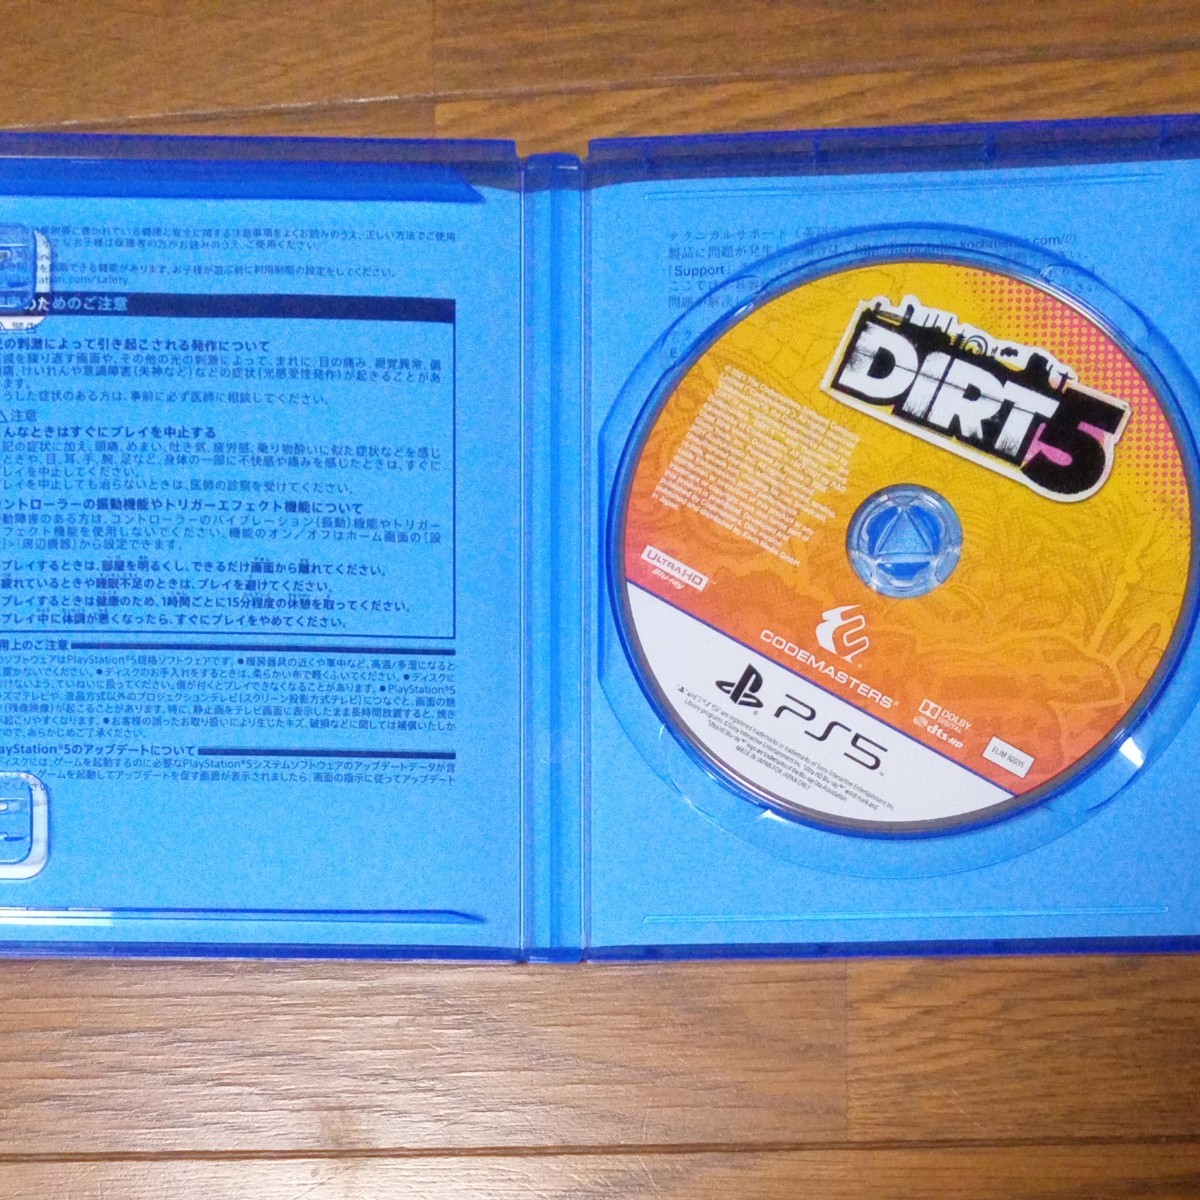 【 PS5 】DIRT5＋初回封入特典･ゲオオリジナル特典プロダクトコード付き